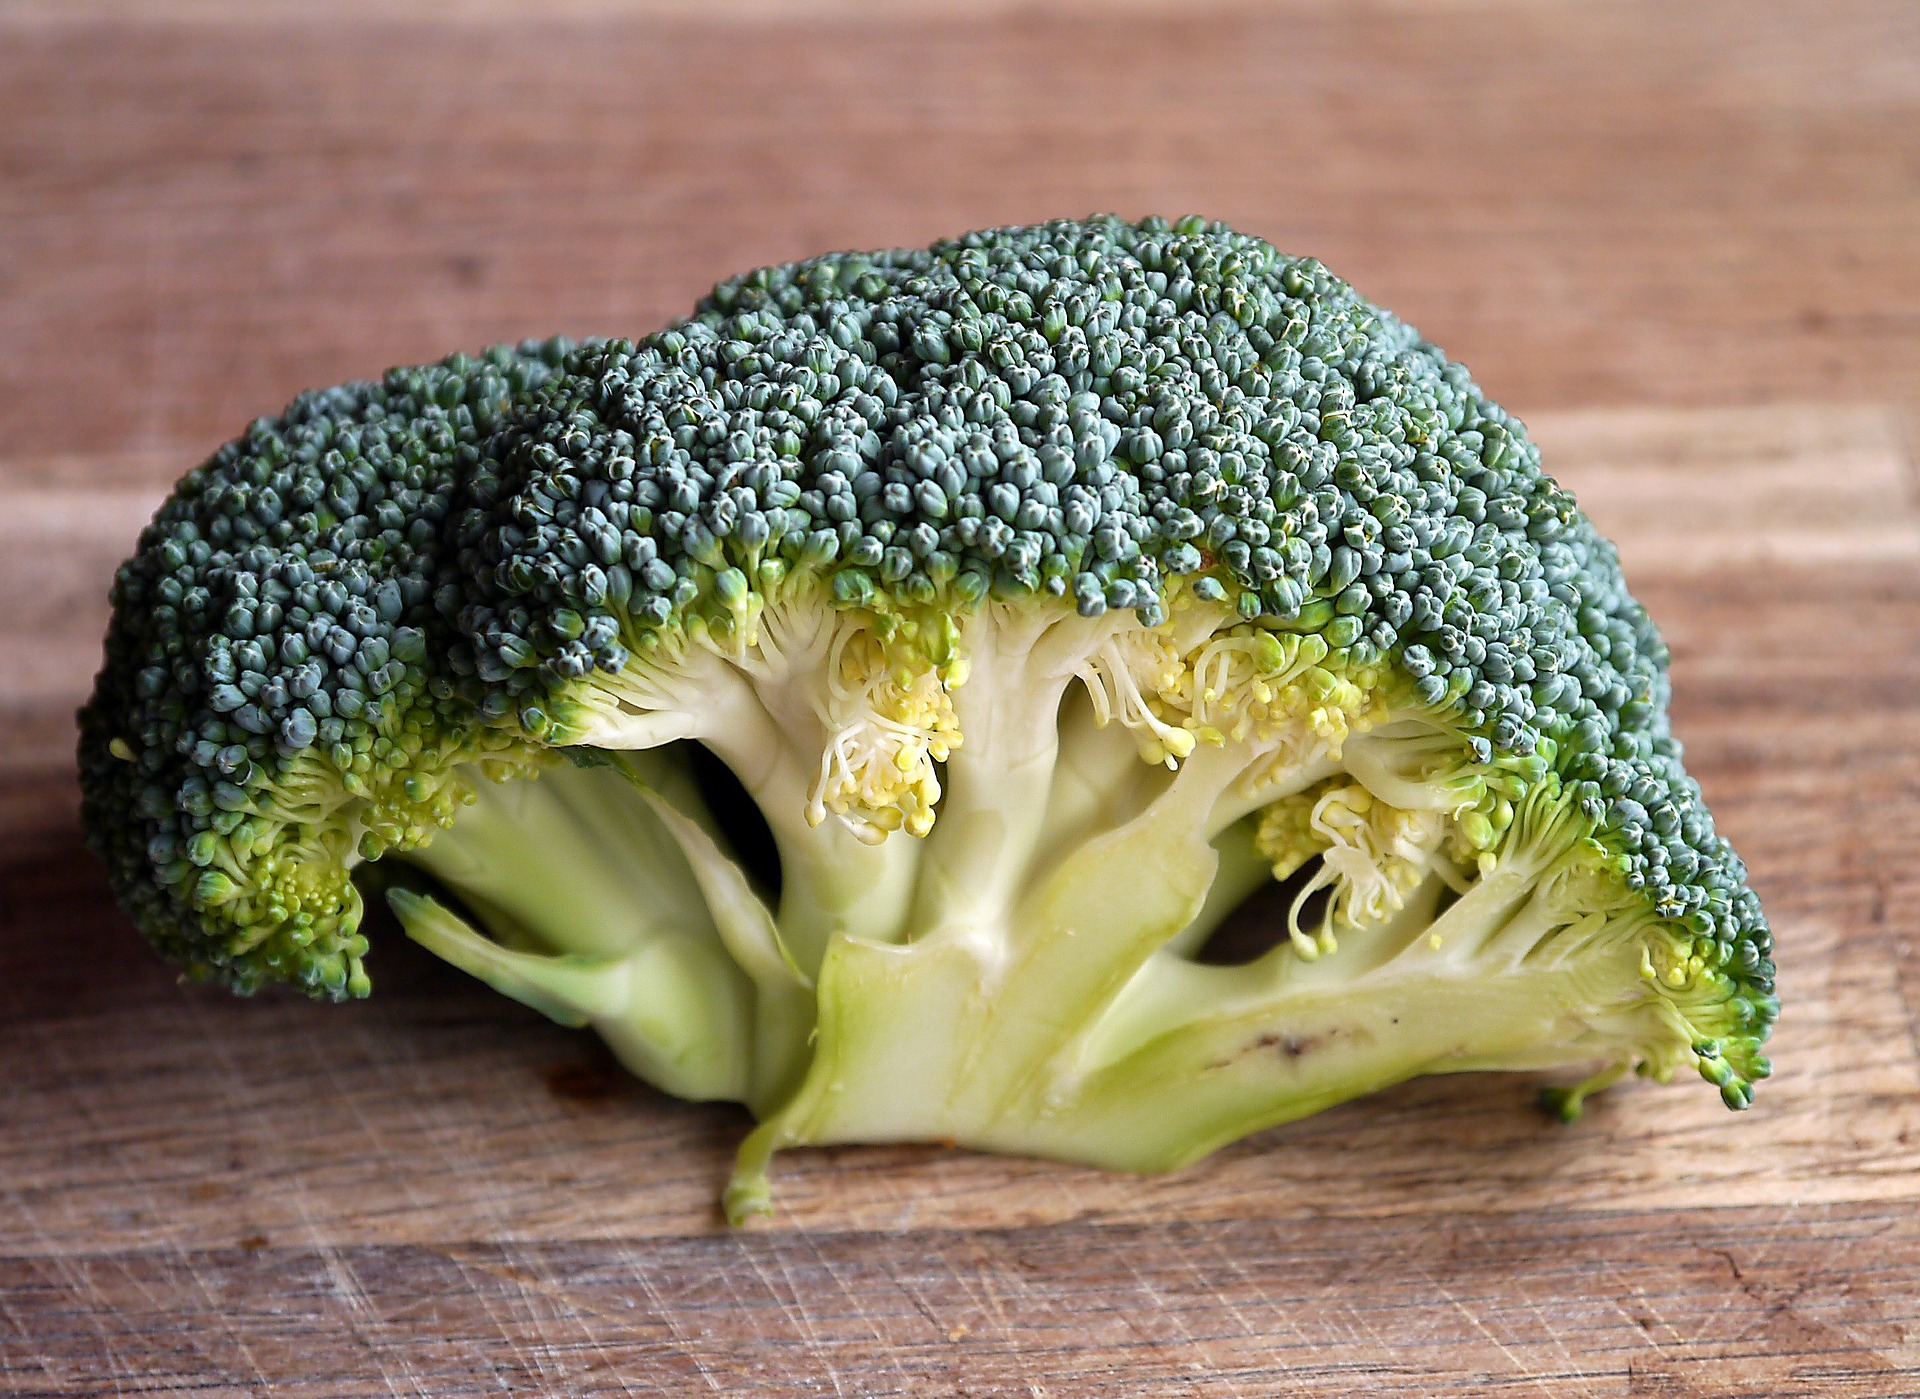 Benefícios do Brócolis: Alimento Saudável e Nutritivo